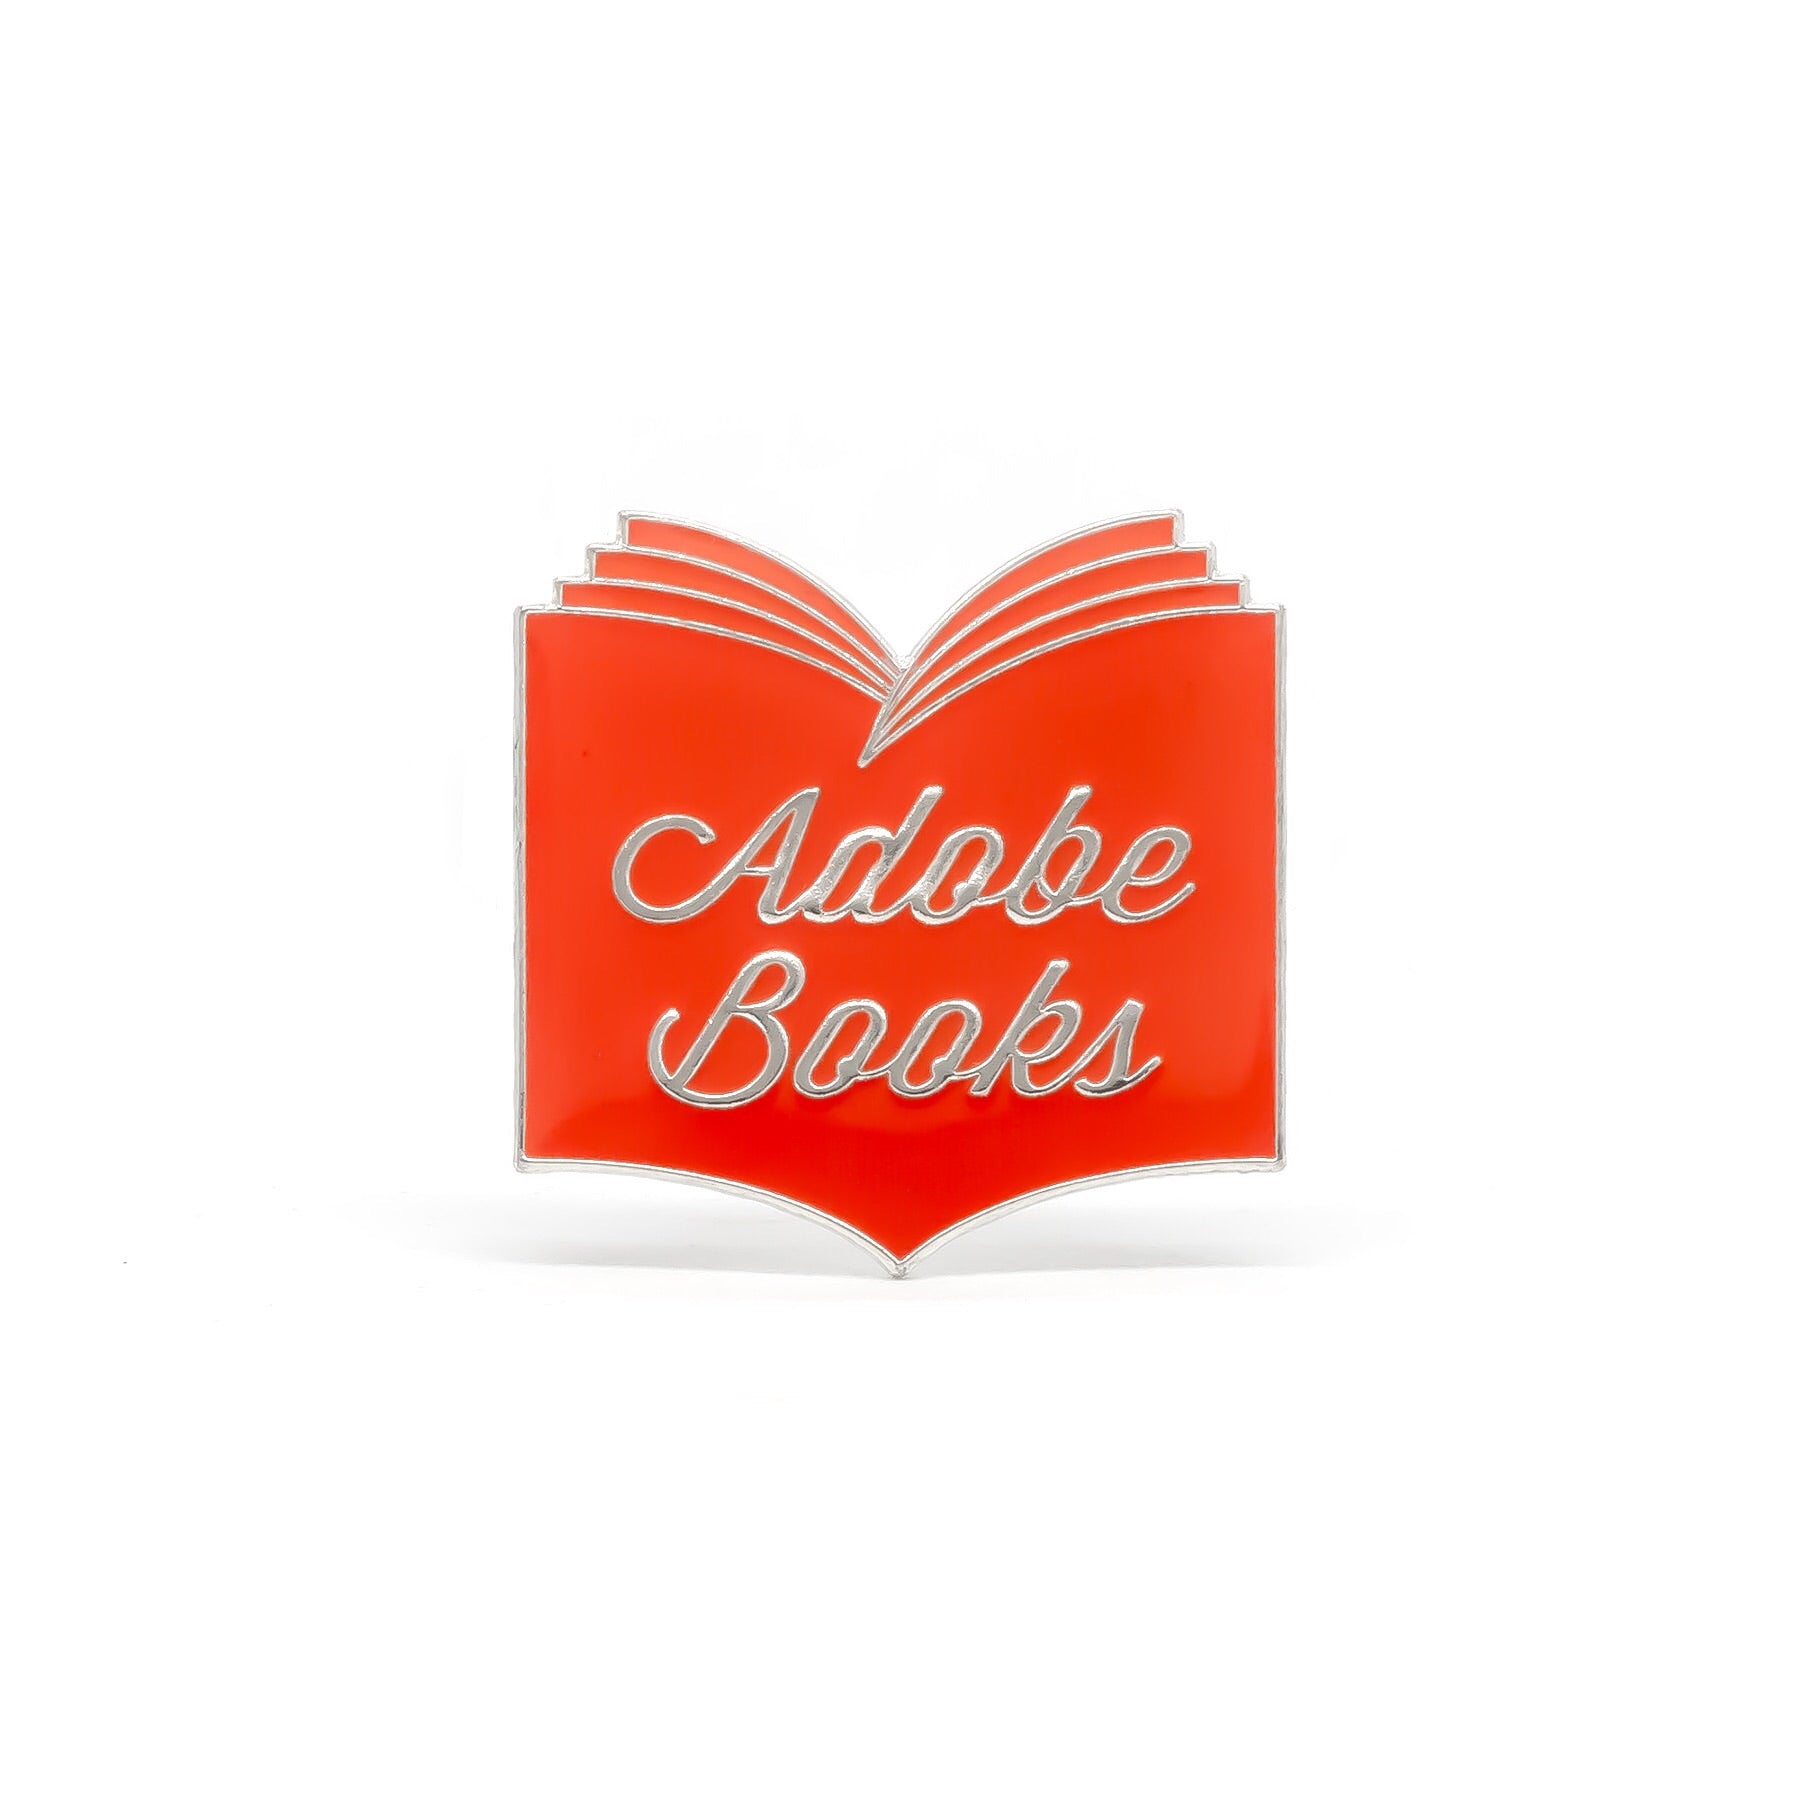 Adobe Books enamel pin